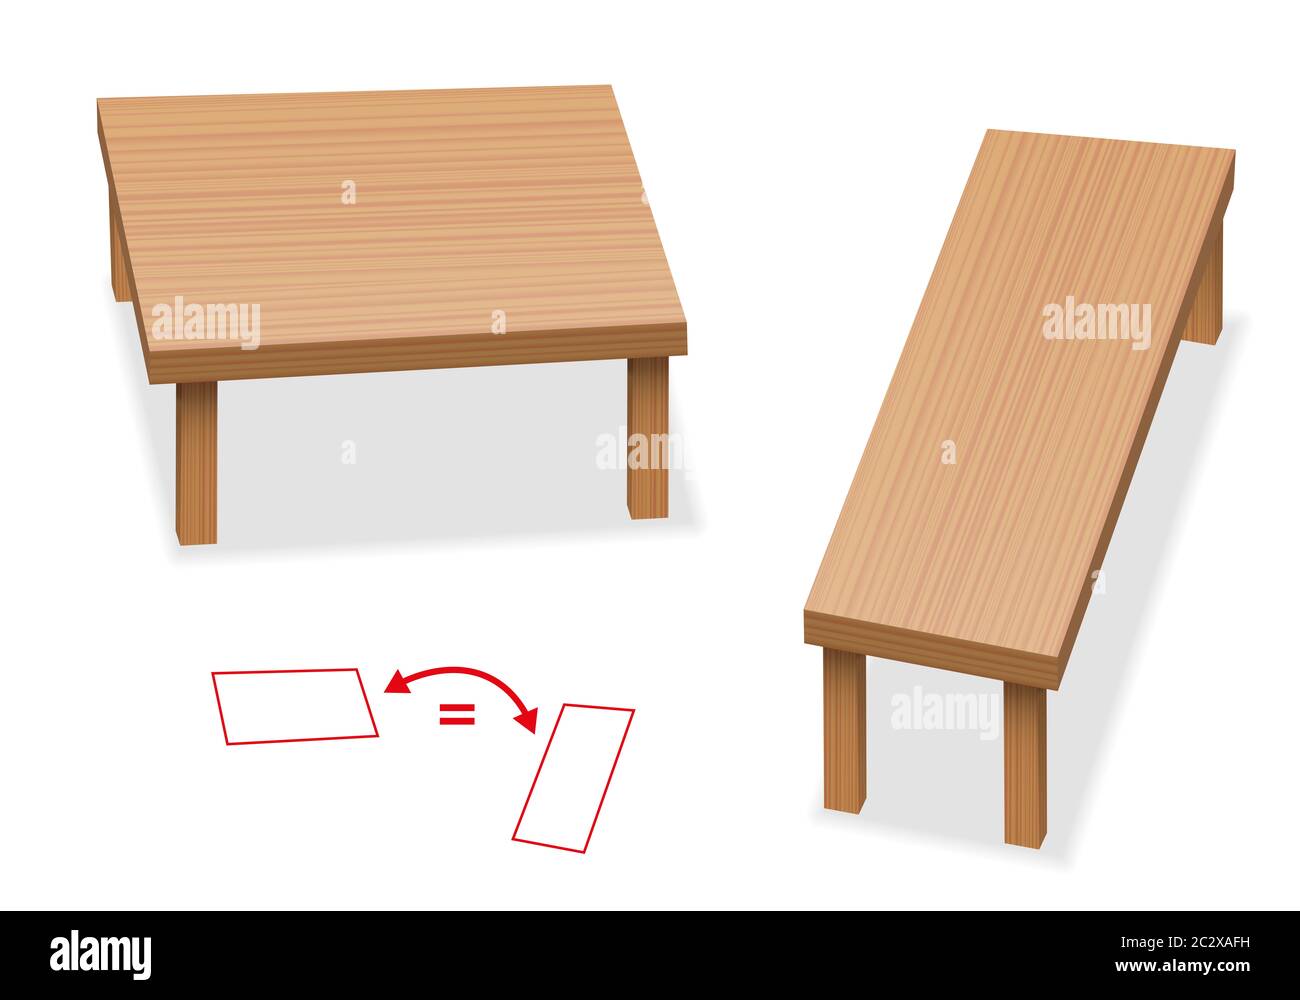 Illusione ottica - due tavoli con esattamente la stessa dimensione del piano portapaziente - percezione della dimensione relativa. Le due superfici di legno si giuntano in modo diverso. Foto Stock